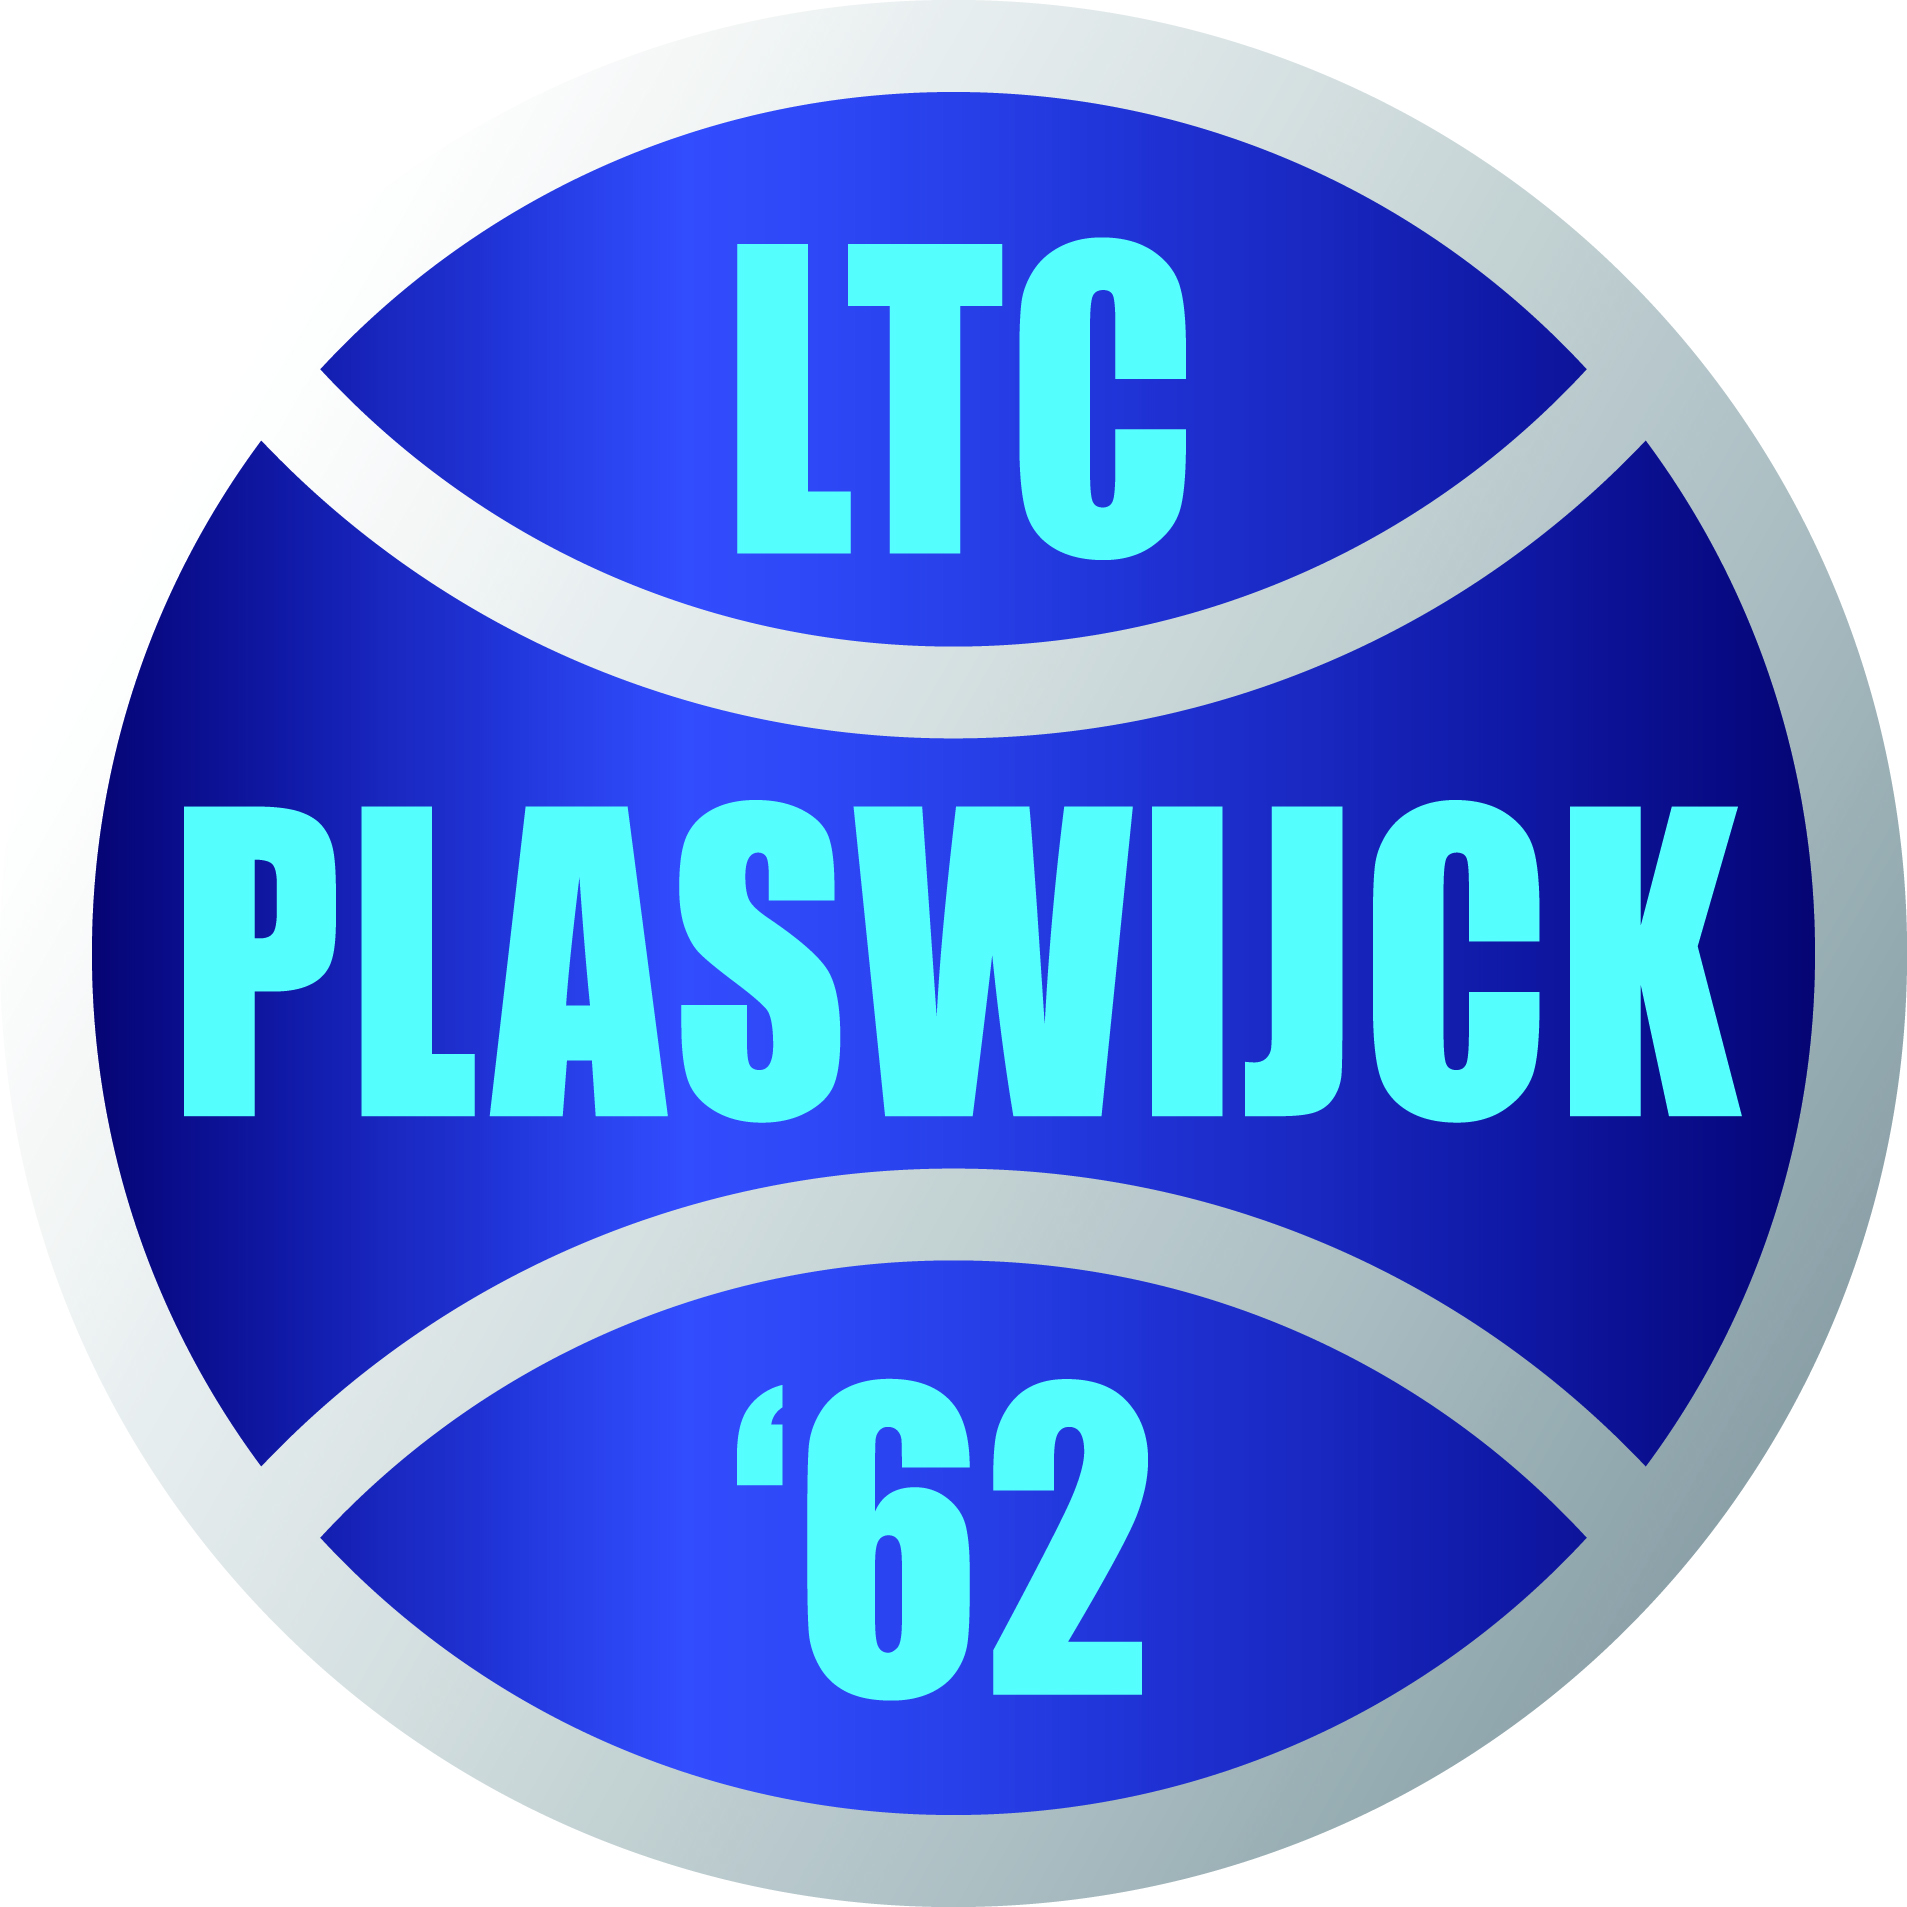 LTC Plaswijck '62 in Rotterdam met tennisladder